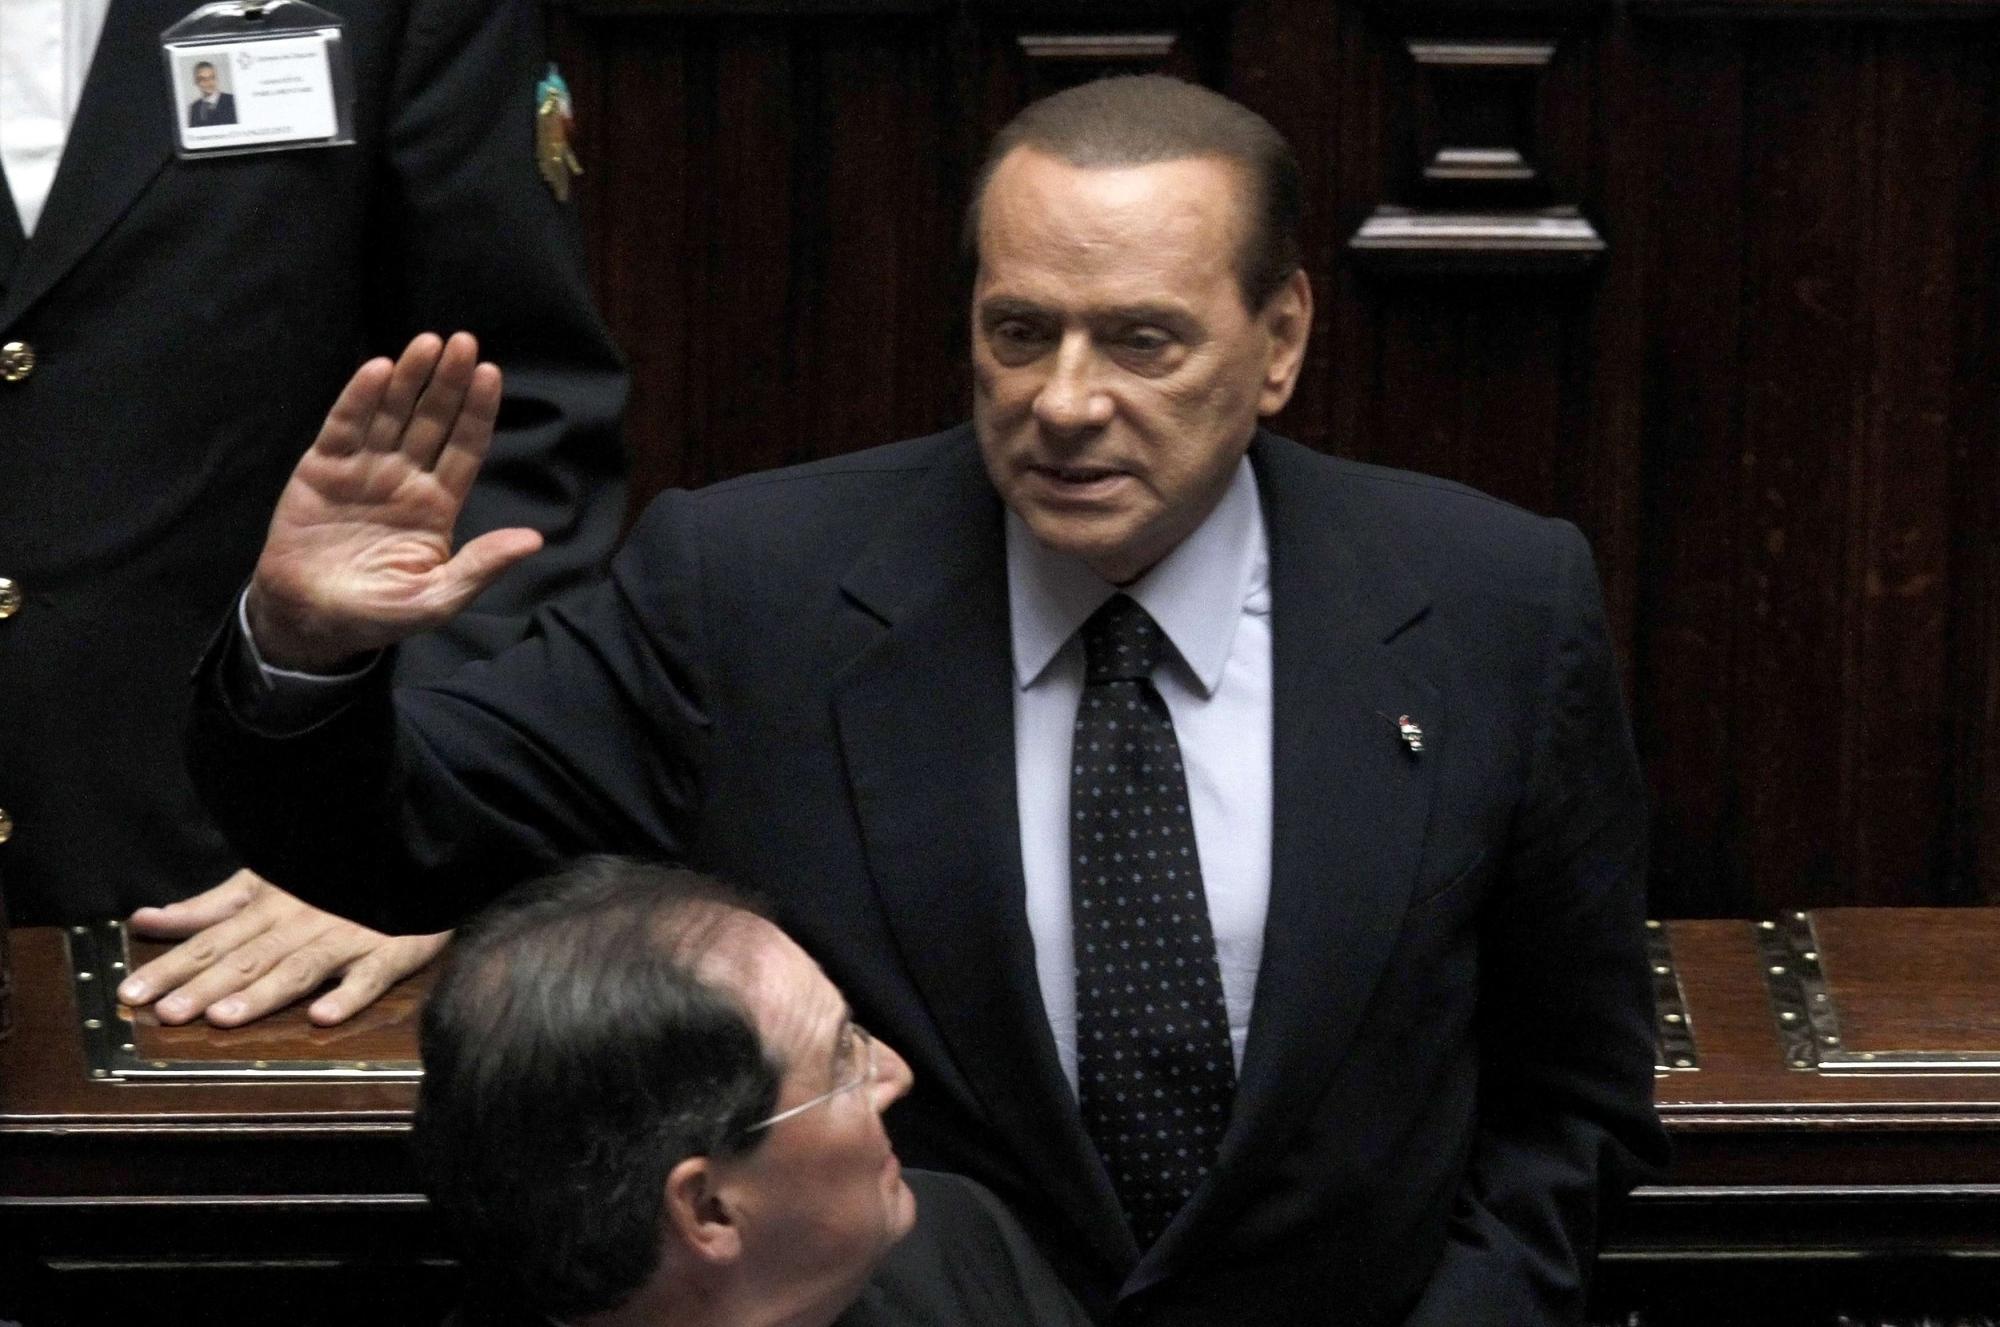 意大利总理贝卢斯科尼辞职 支持者感谢、反对者嘲讽